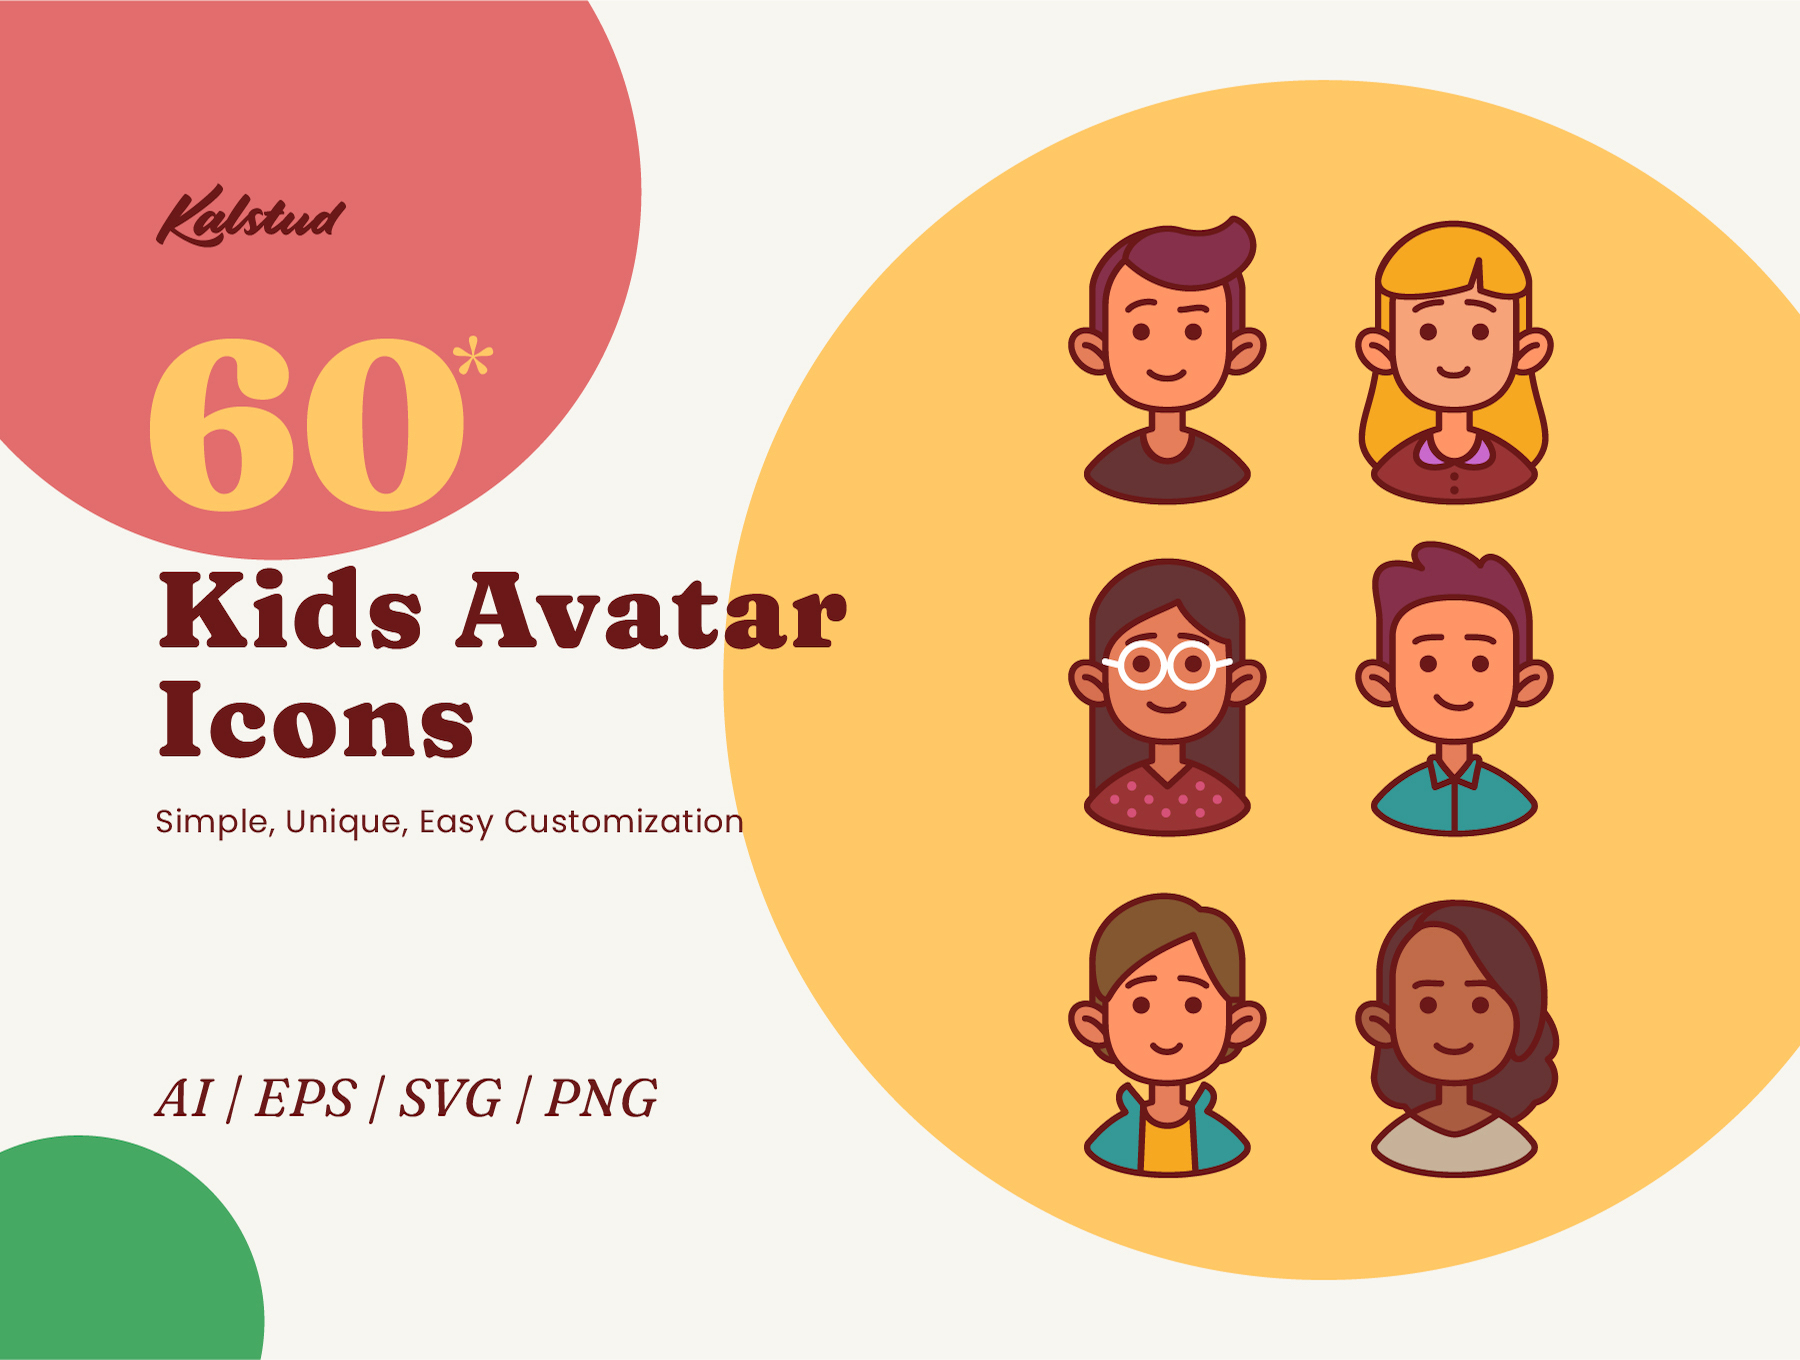 05 60个可爱的插画风格儿童头像矢量图标素材 60 Kids Avatar Icons 05